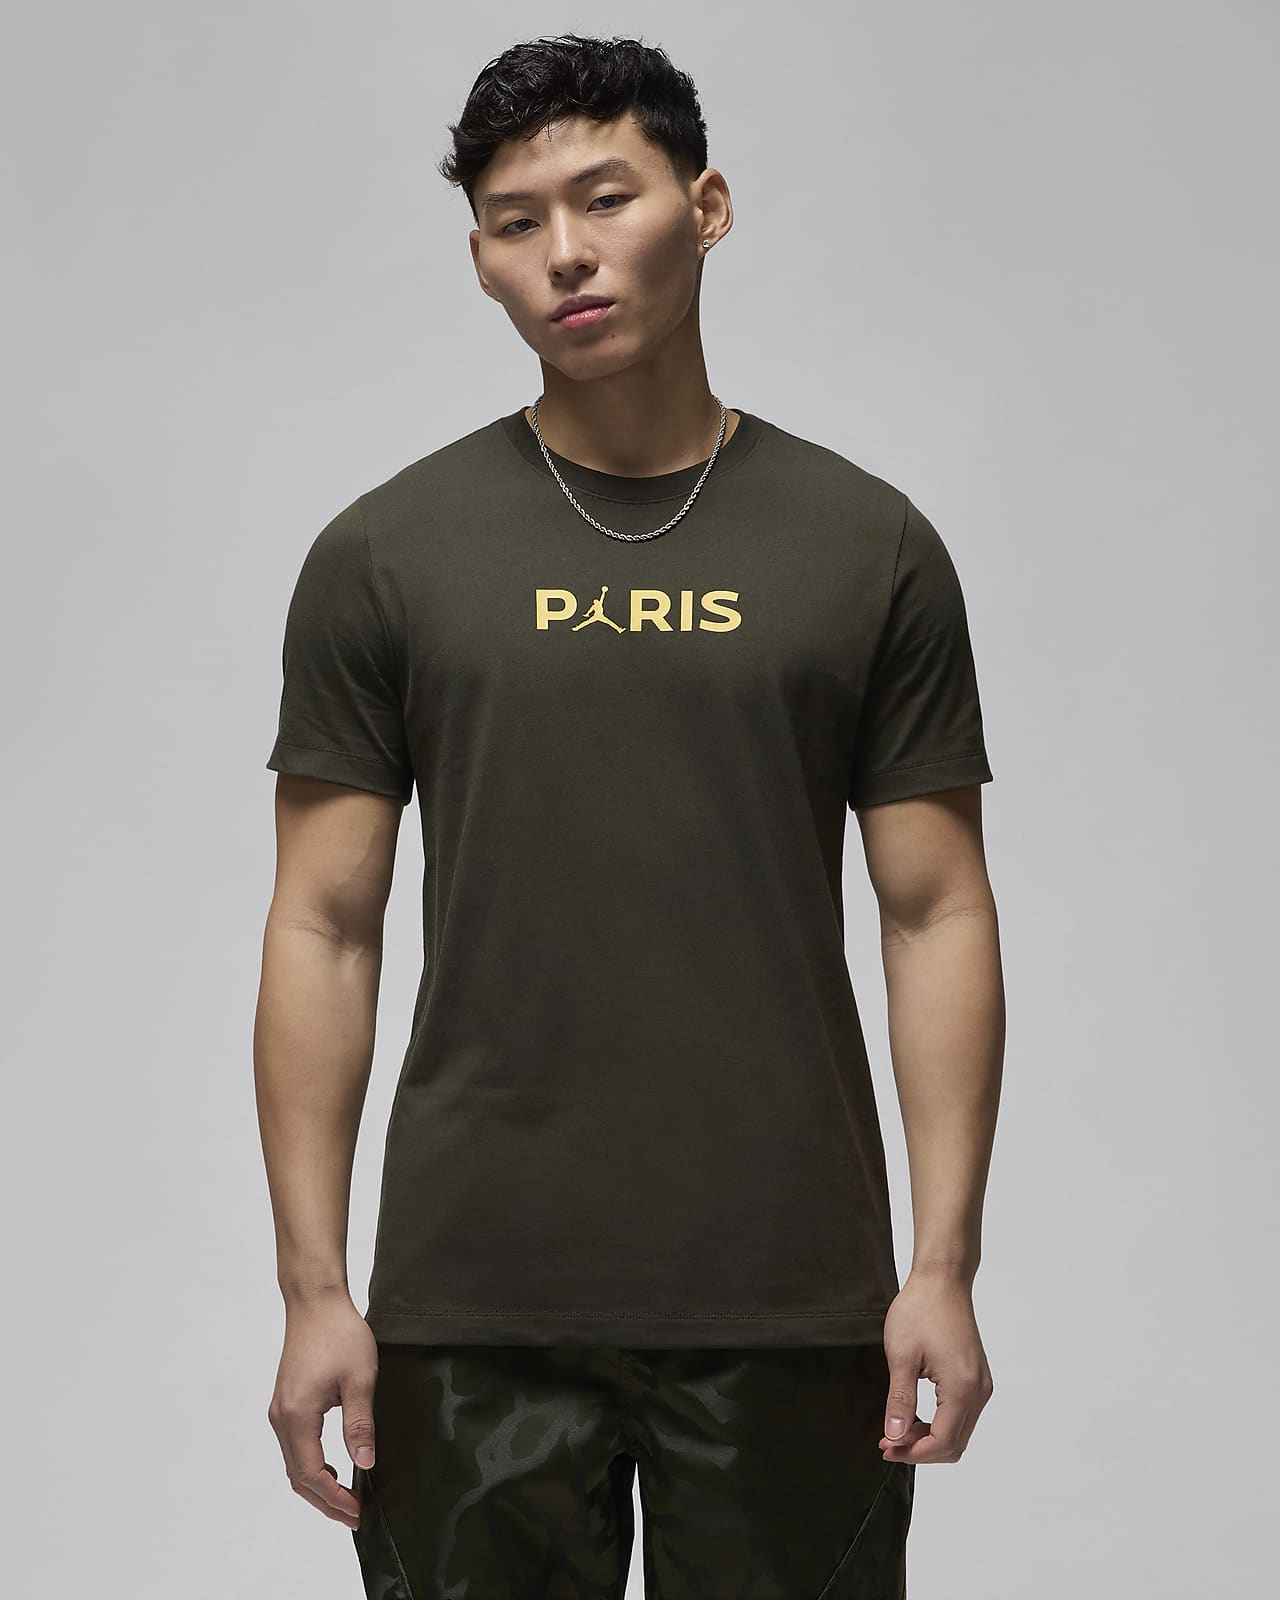 パリ サンジェルマン (PSG) メンズ Tシャツ